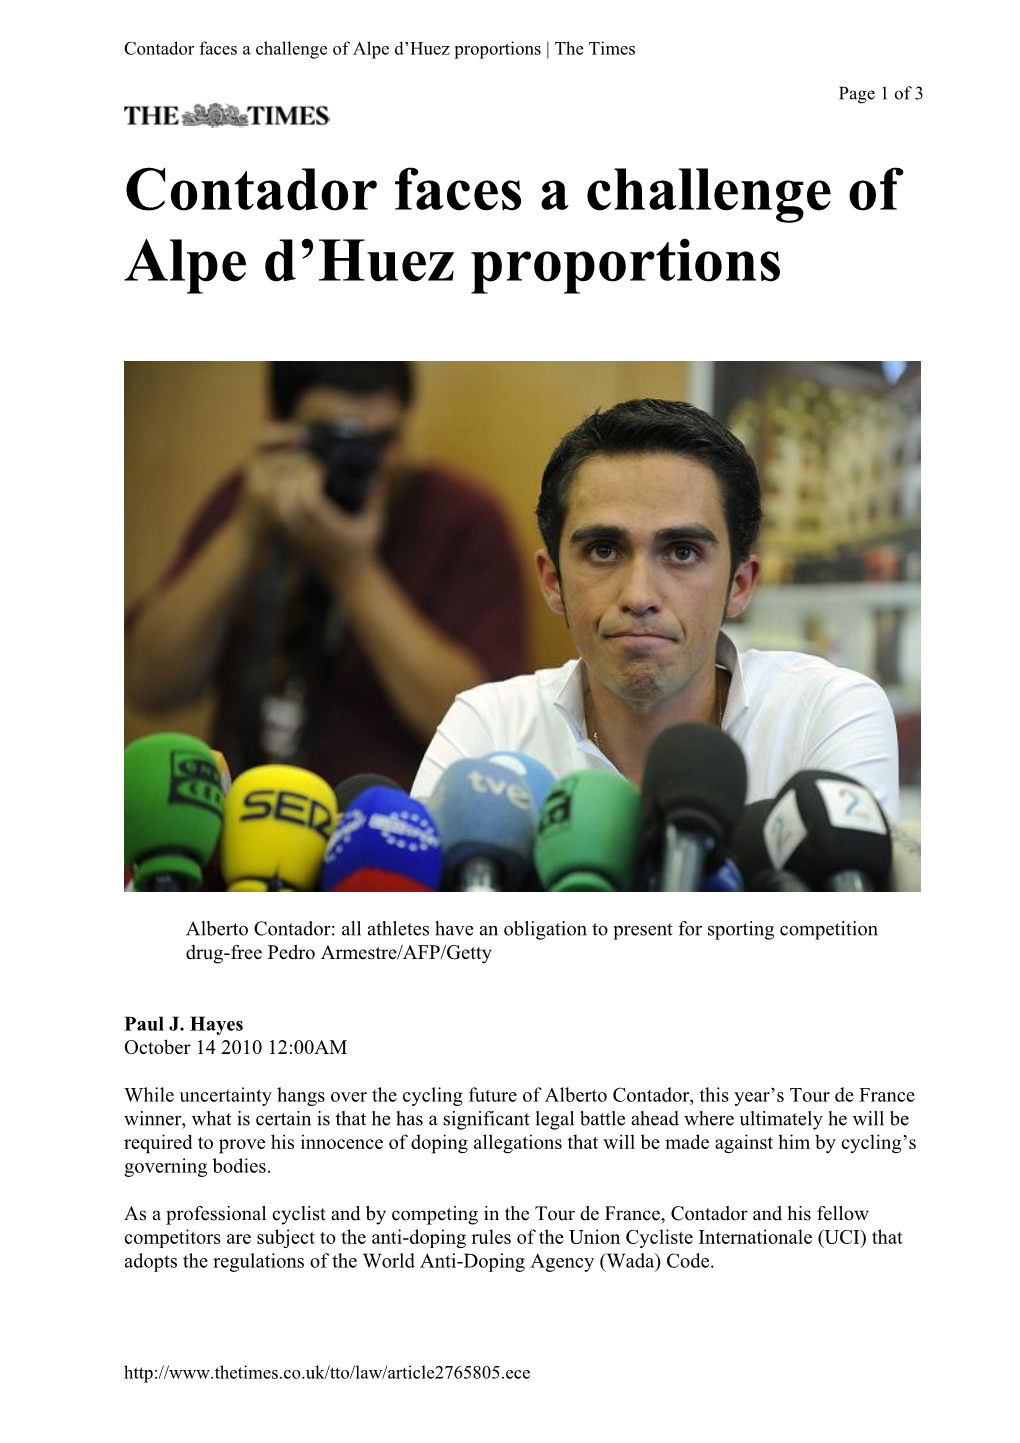 Contador Faces a Challenge of Alpe D'huez Proportions